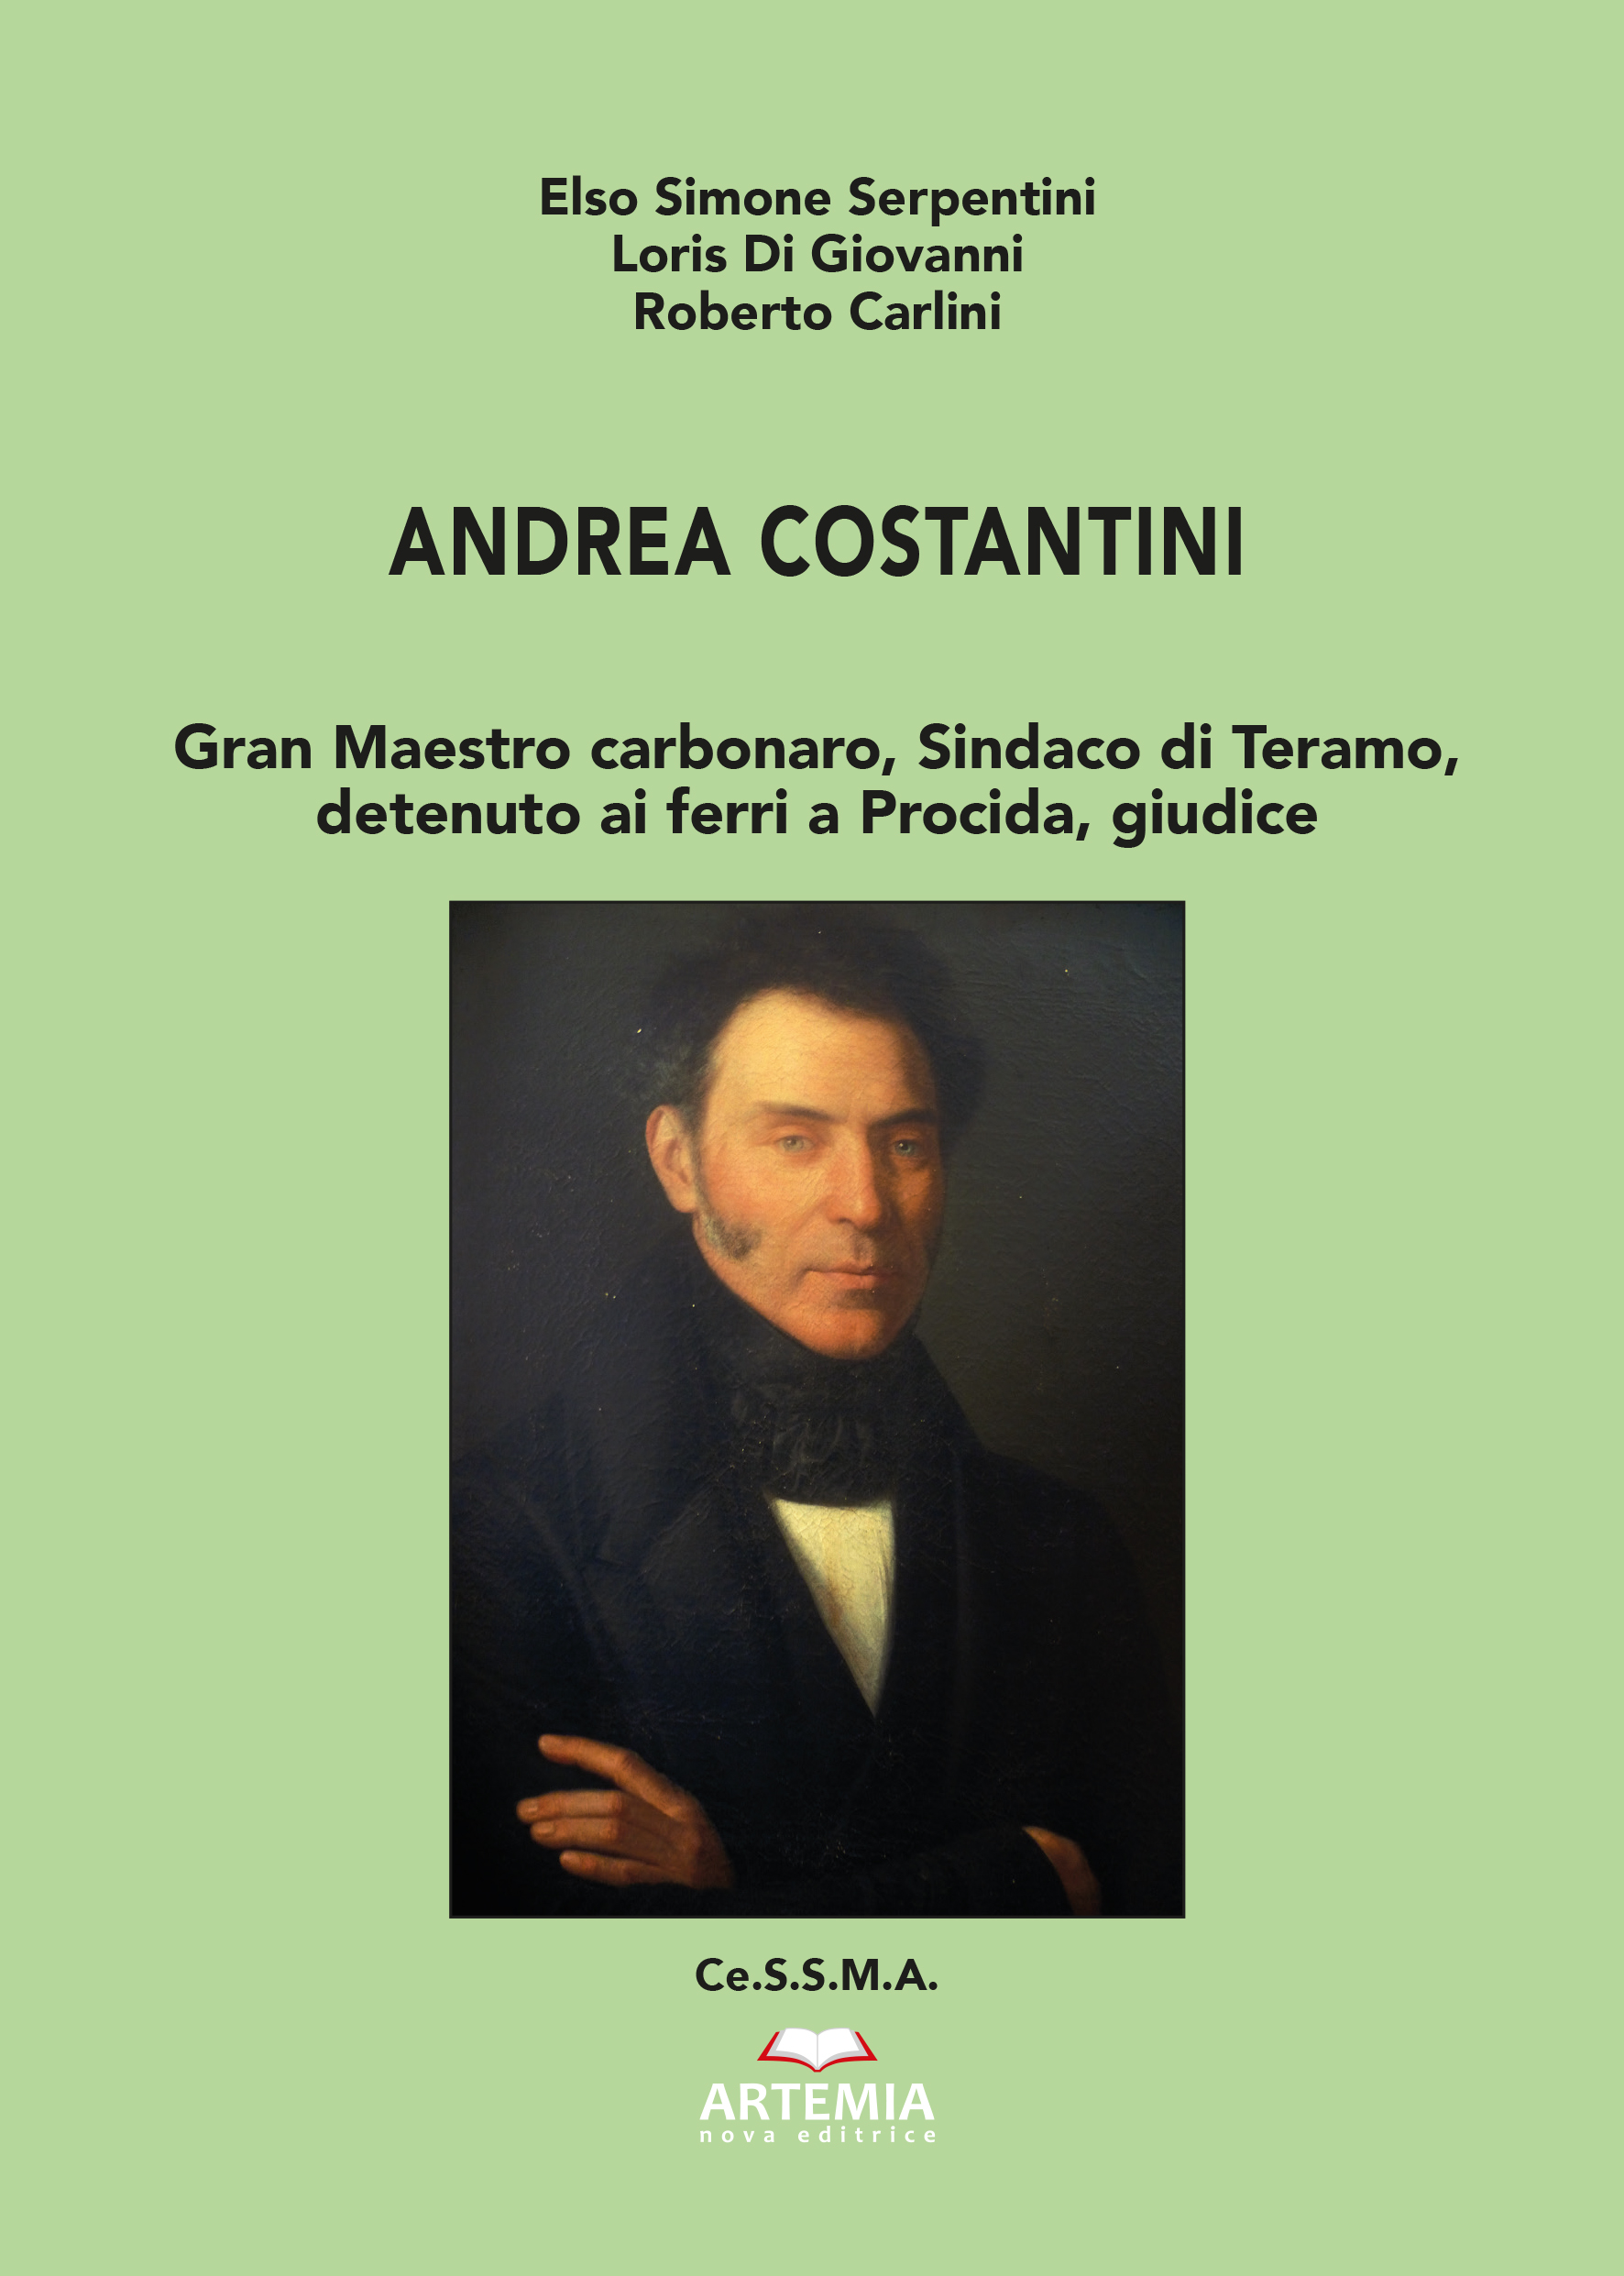 ANDREA COSTANTINI